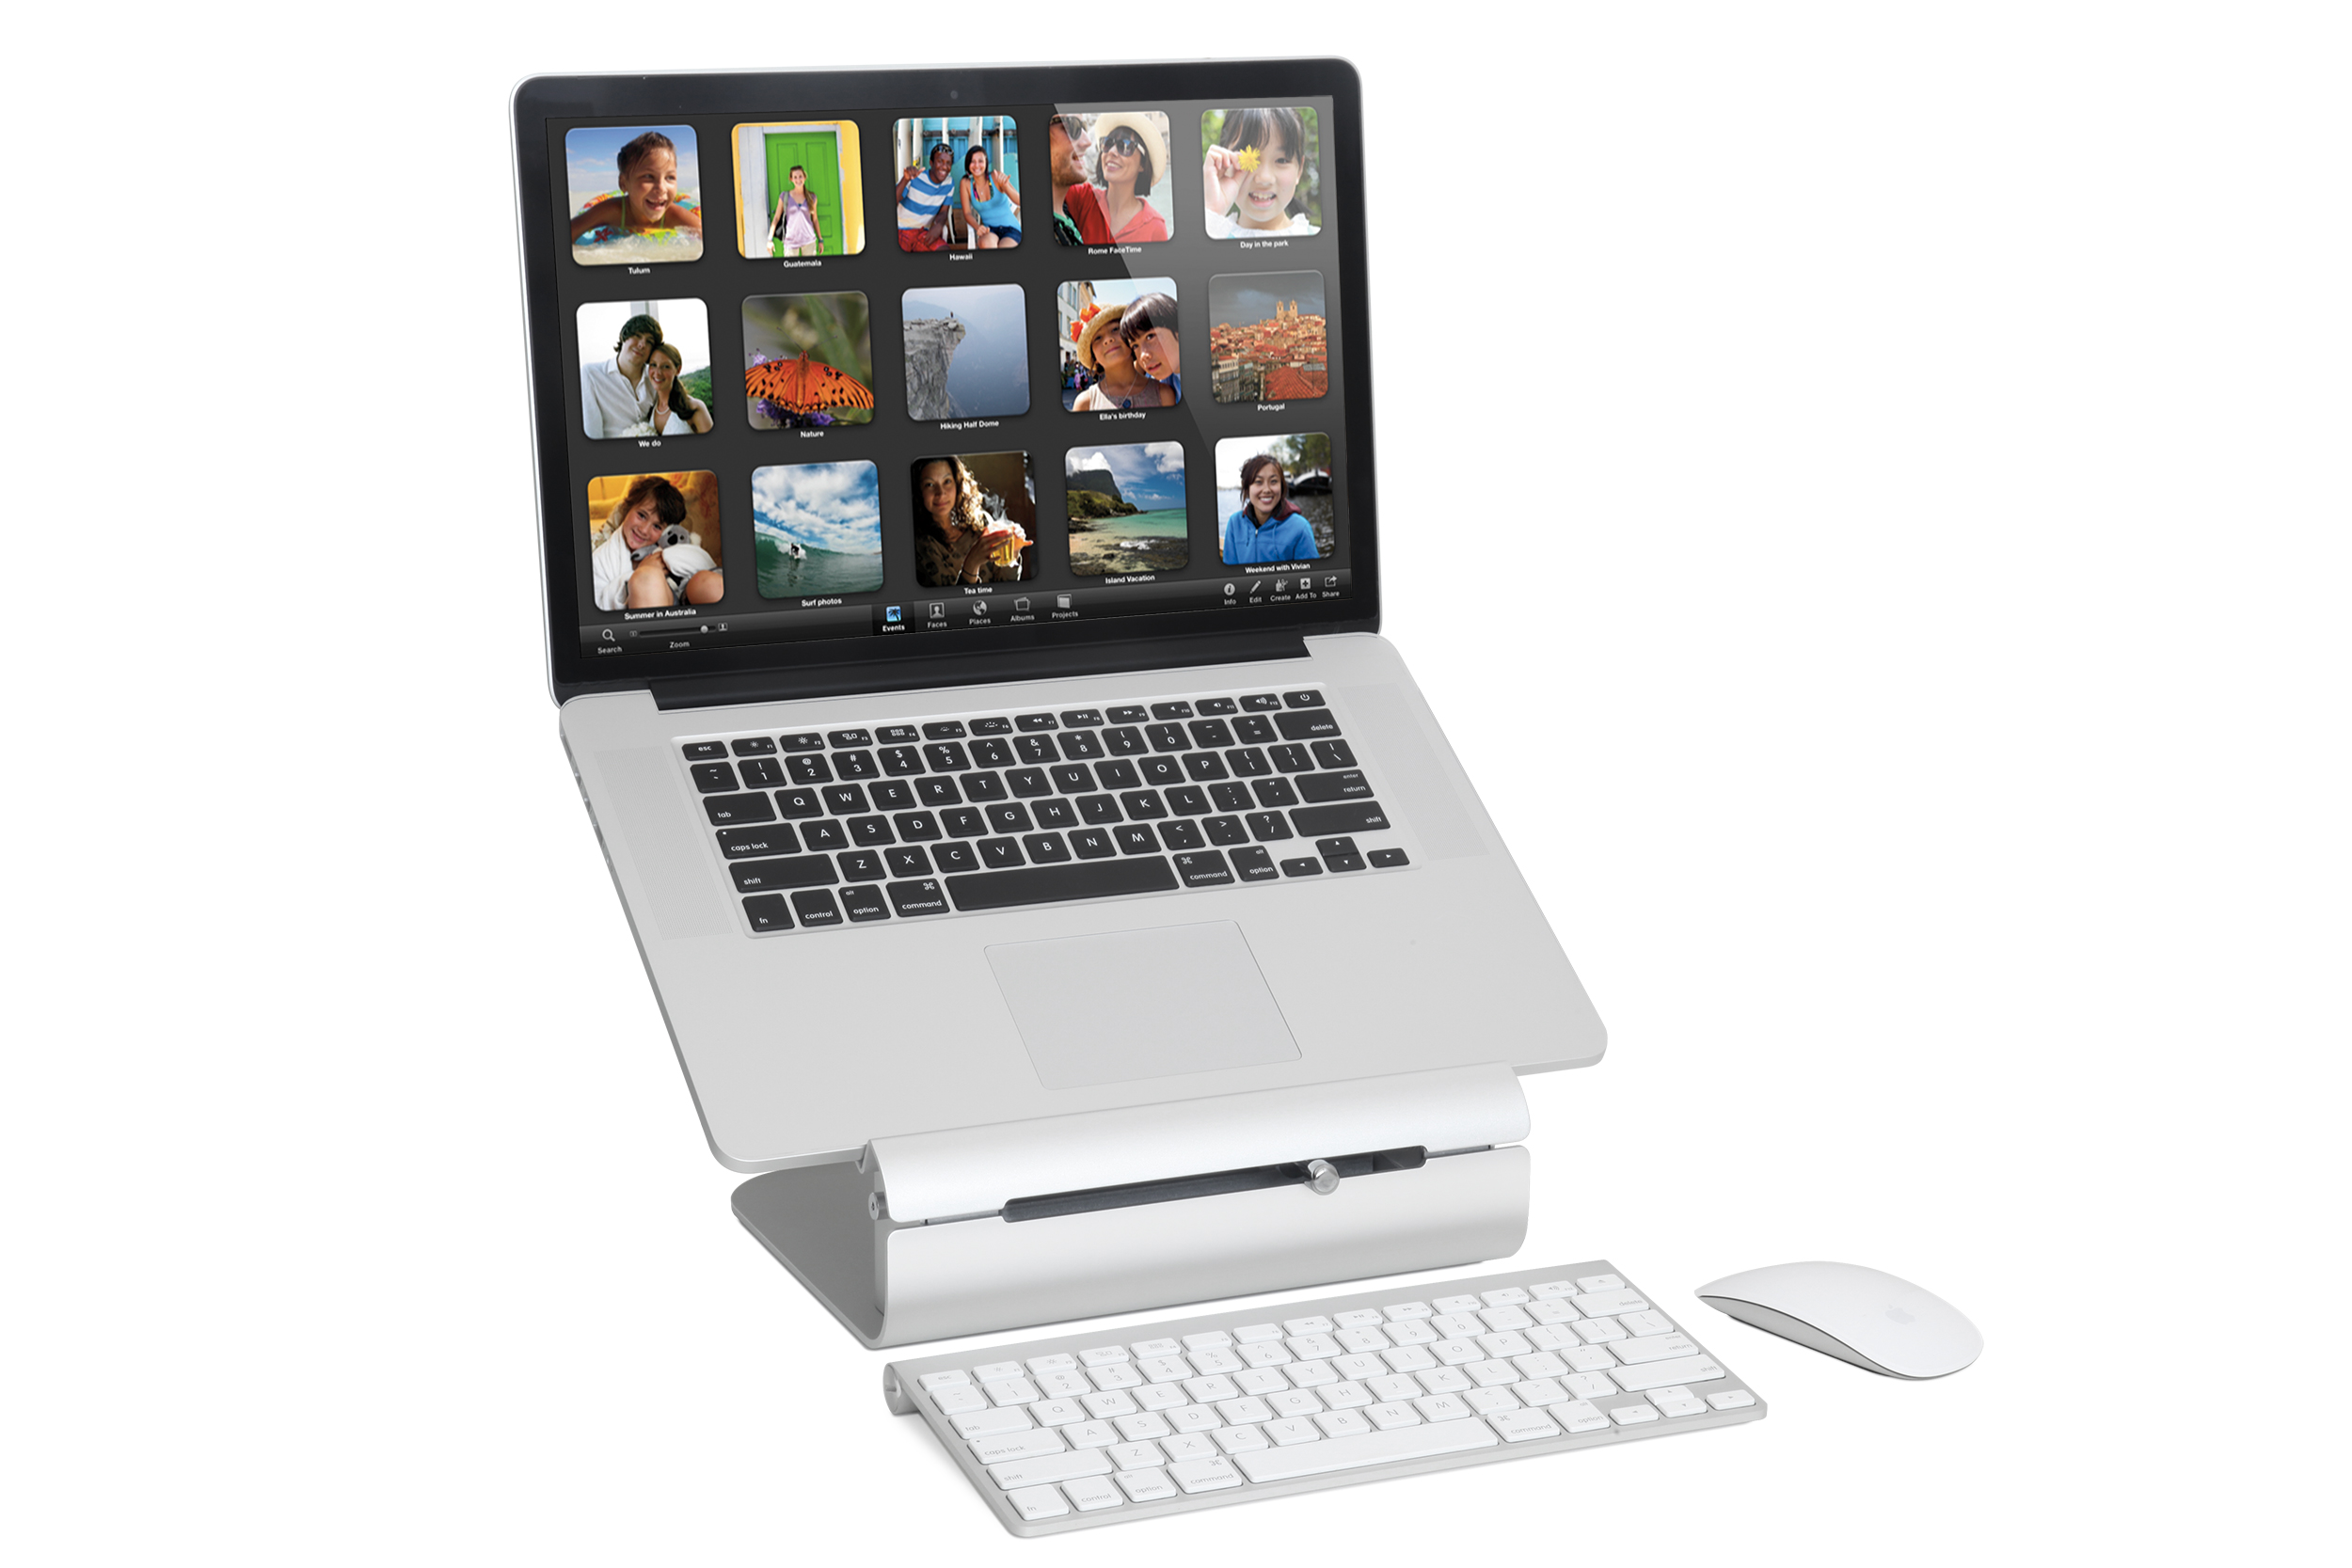 Ständer iLevel2 RAINDESIGN MacBook